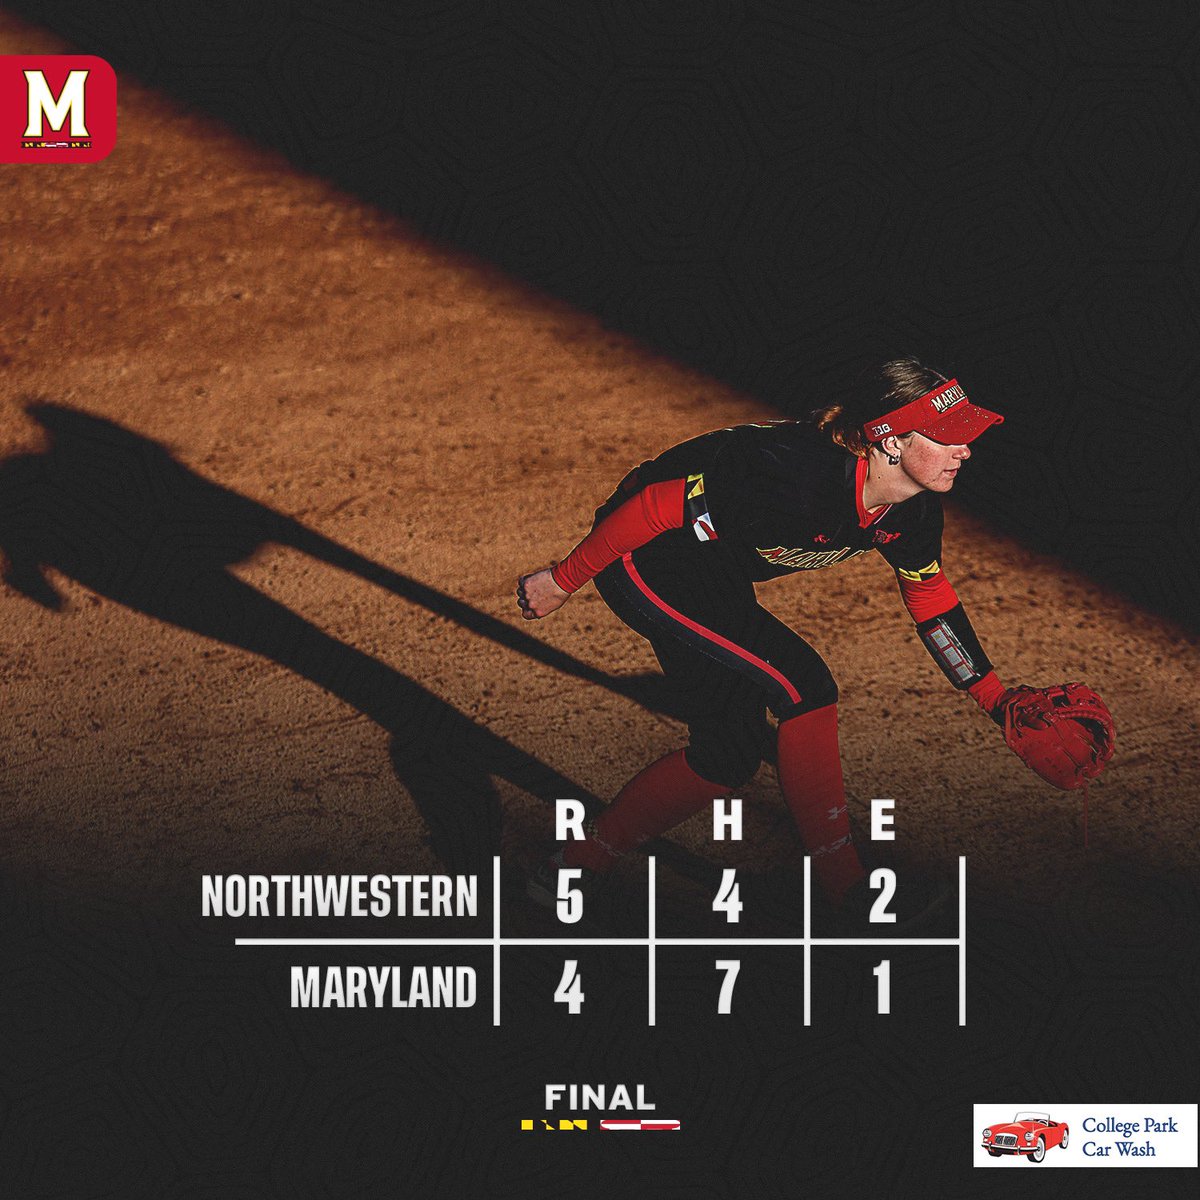 Final

Maryland 4, Northwestern 5

📰: go.umd.edu/3xw3EeC

#FearTheTurtle